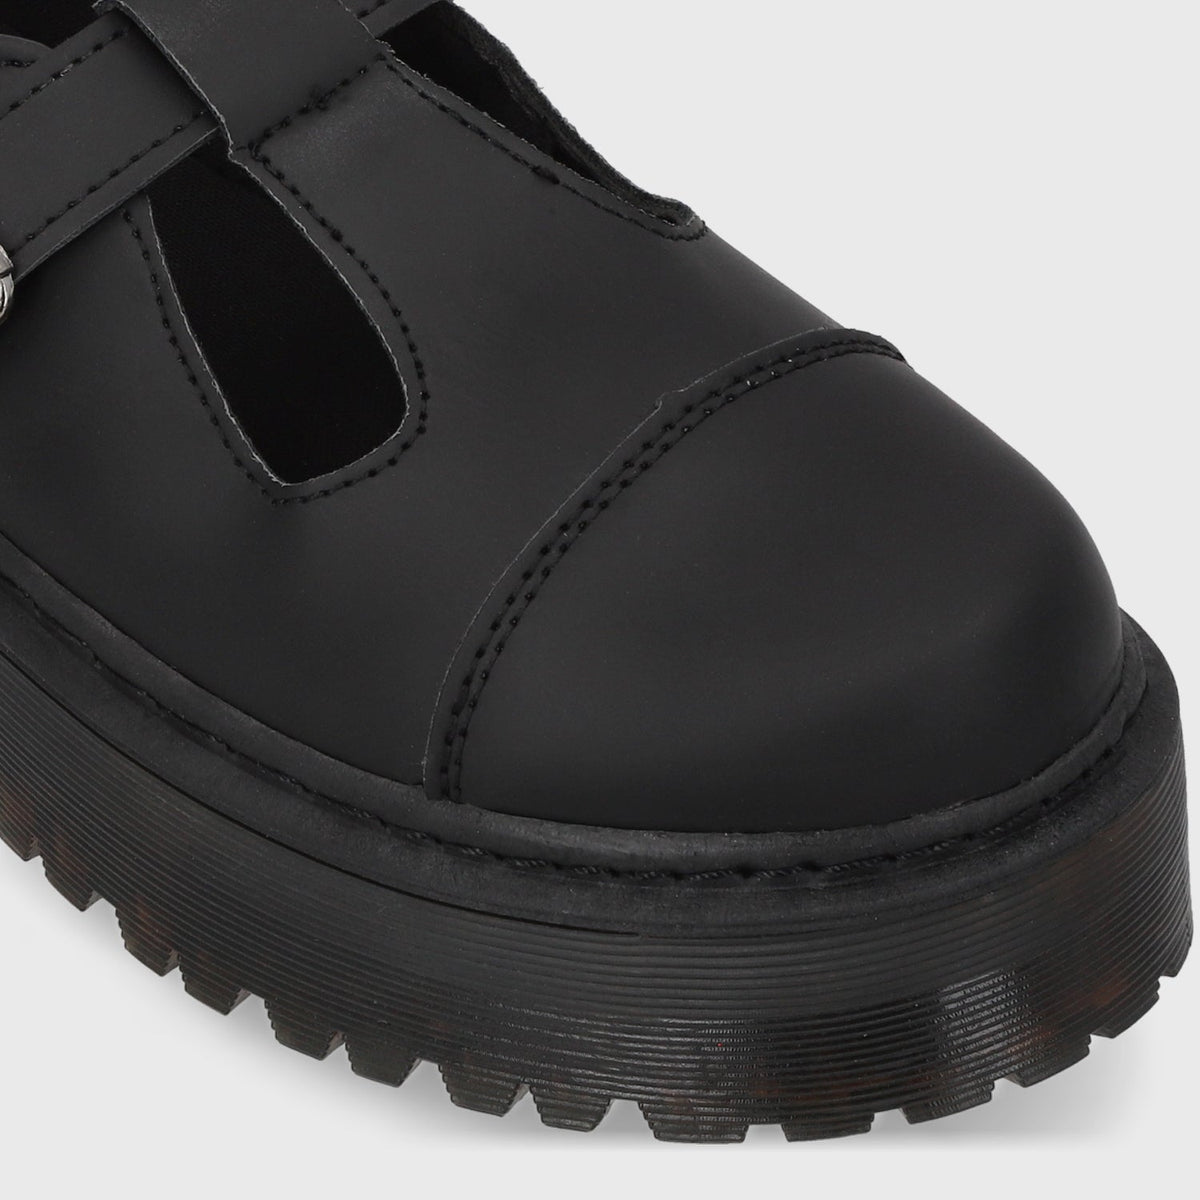 Zapato Negro Mujer C5919 - Gotta Chile